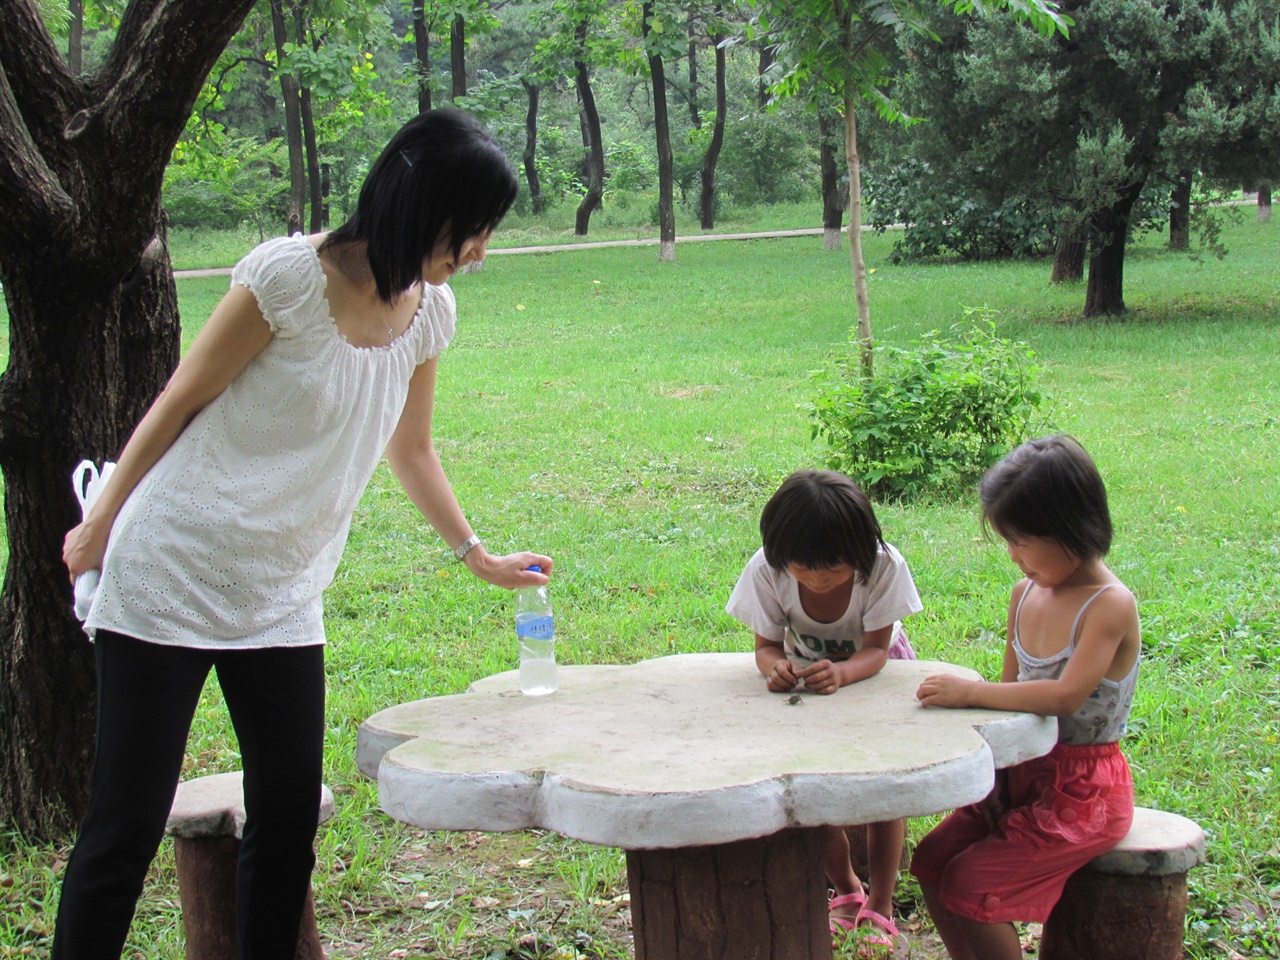  다가가자 수줍어 하는, 매미를 잡아 놀고있는 황해도의 아이들. (2013년 8월18일)